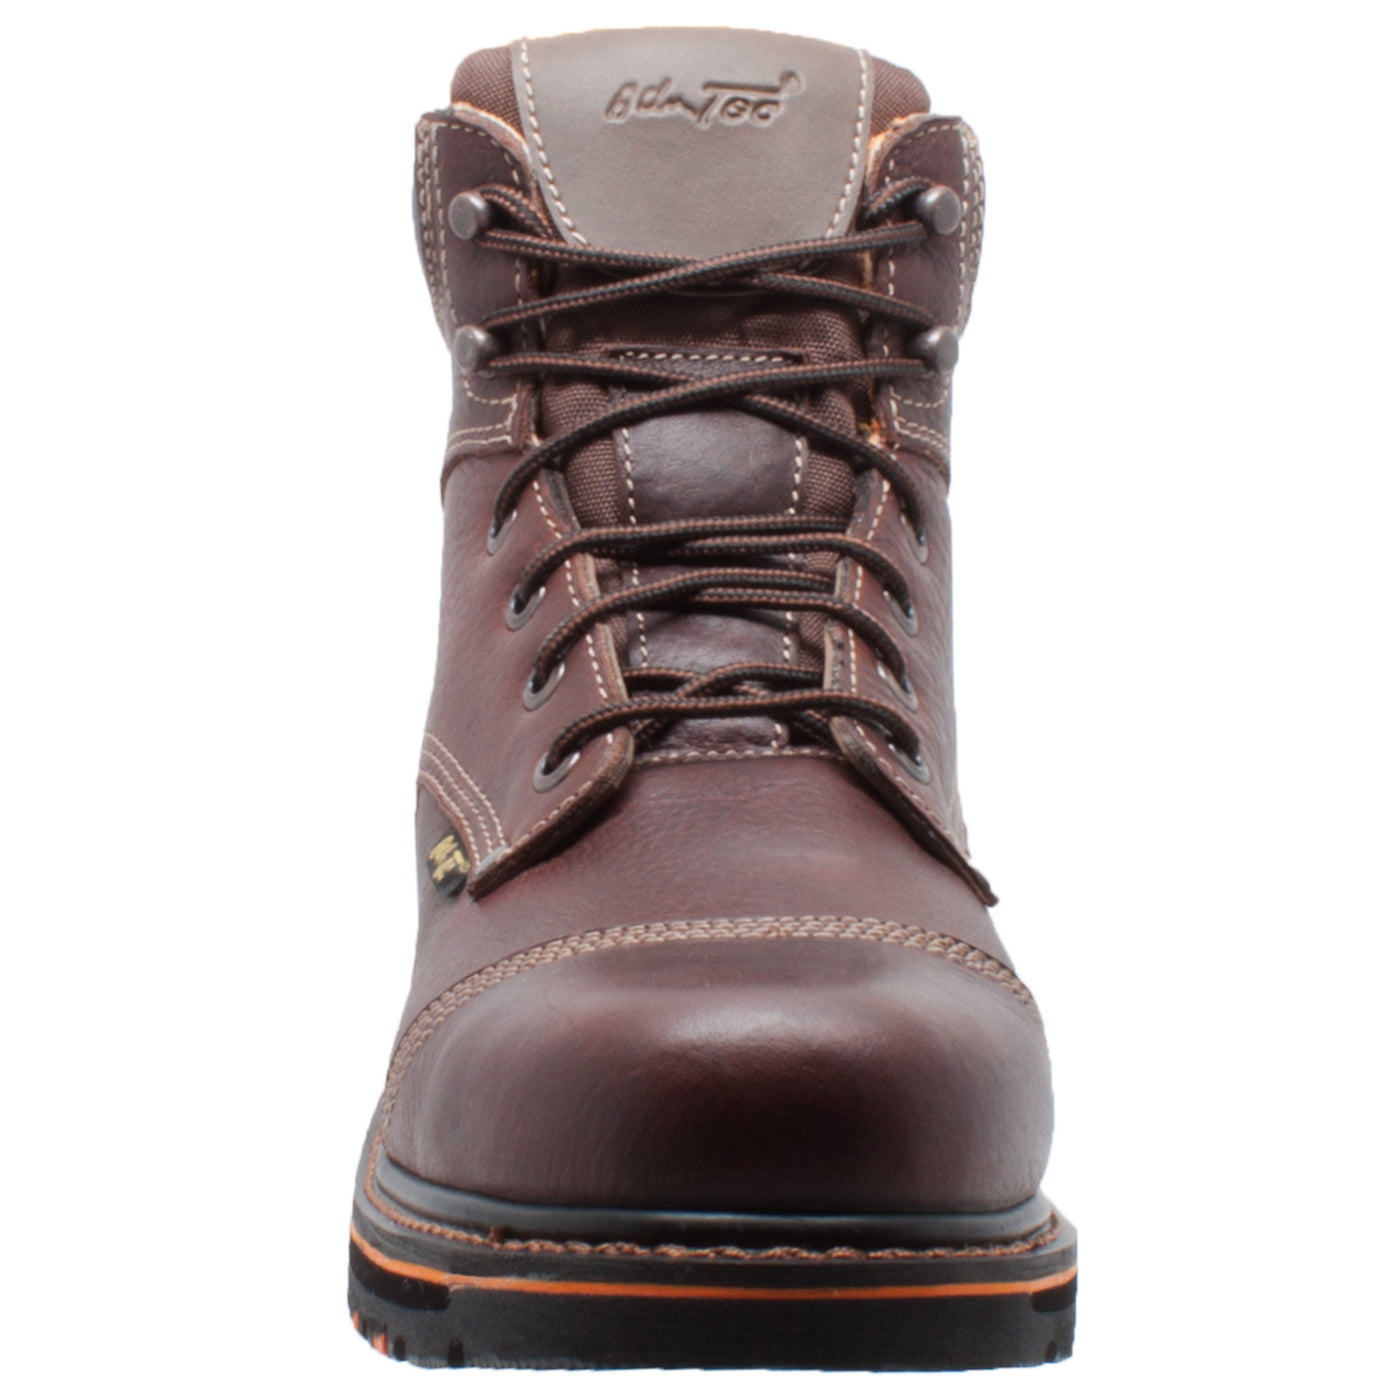 Men's 6" Comfort Work Boot Dark Brown - 9723 - Shop Genuine Leather men & women's boots online | AdTecFootWear